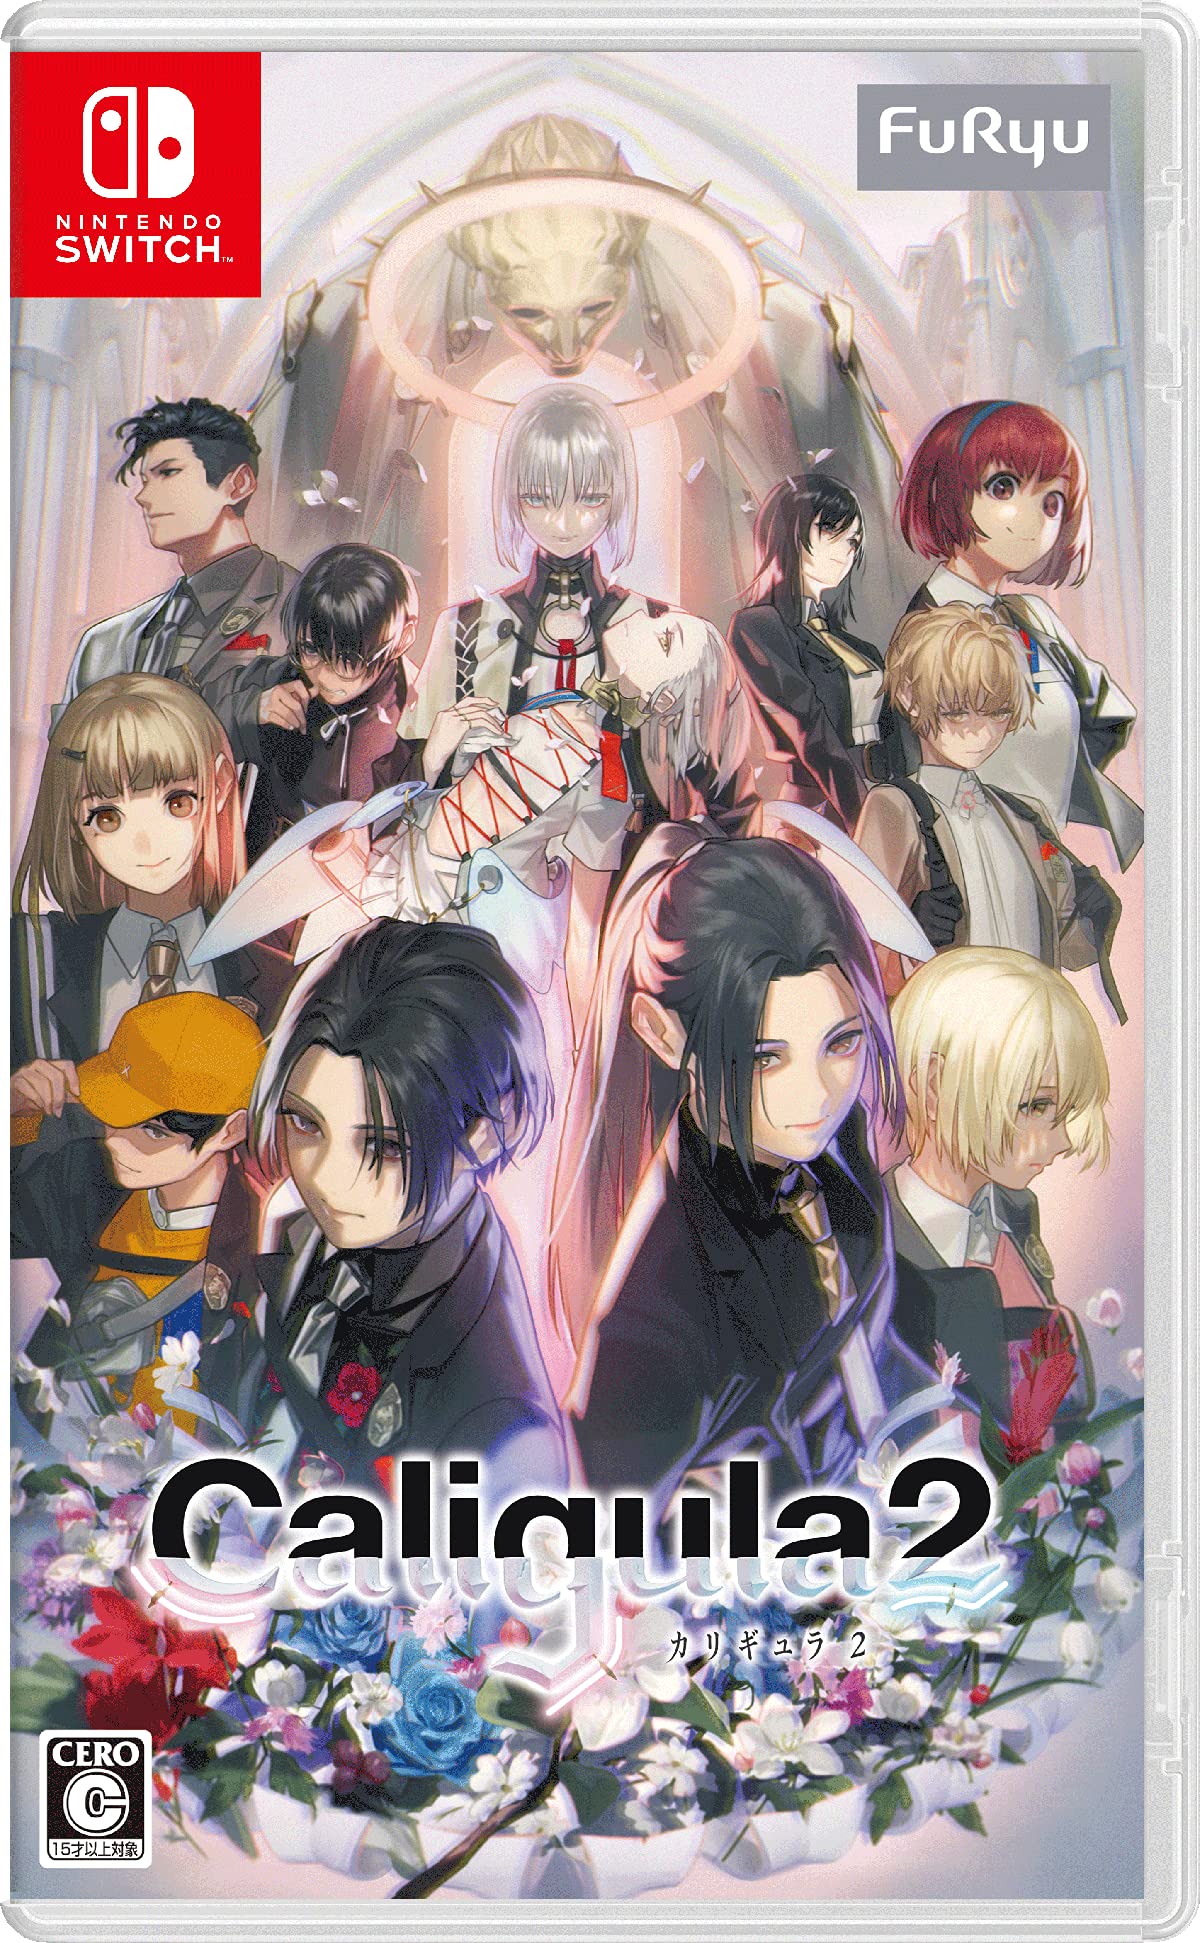 Caligula2-カリギュラ2- おぐち描き下ろしデジタル壁紙 ※有効期限切れのため入手不可・使用不可 - Switch画像